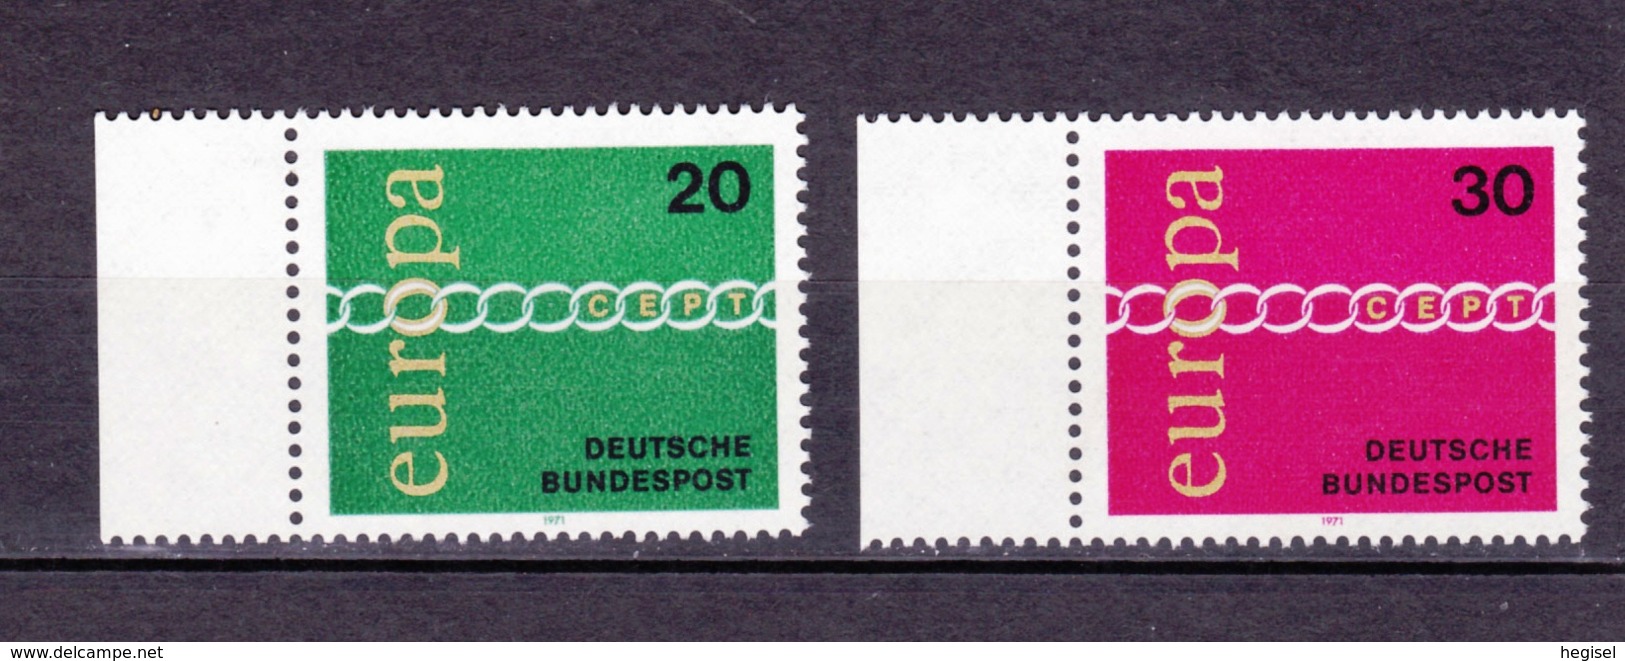 1971 CEPT - Deutsche Bundespost, Postfrisch - 1971